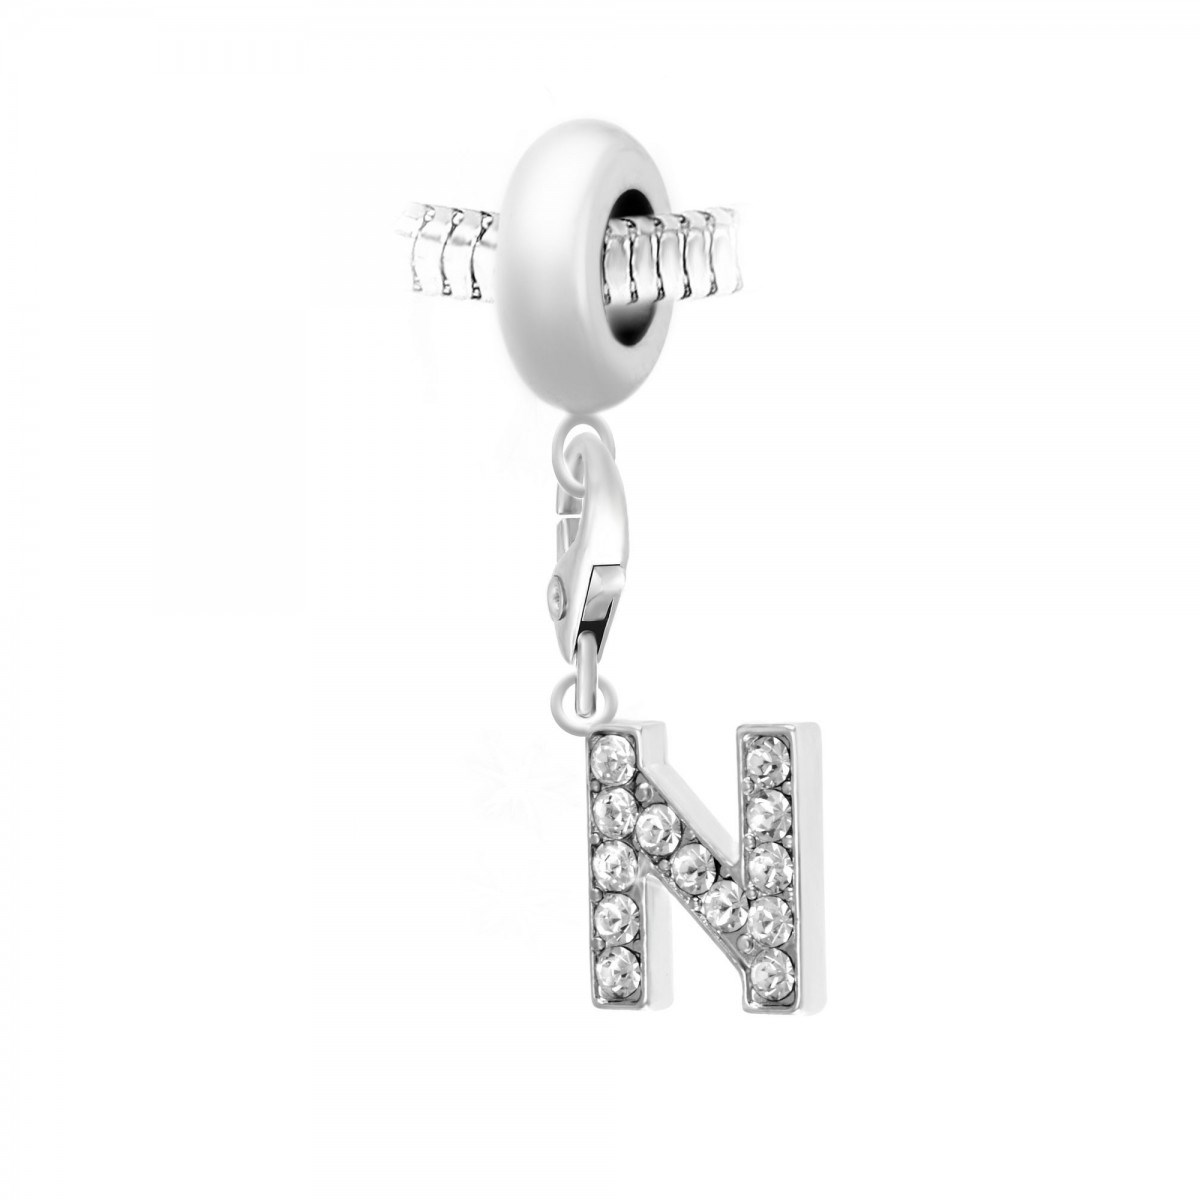 Charm perle SC Crystal en acier avec pendentif lettre N ornée de Cristaux scintillants